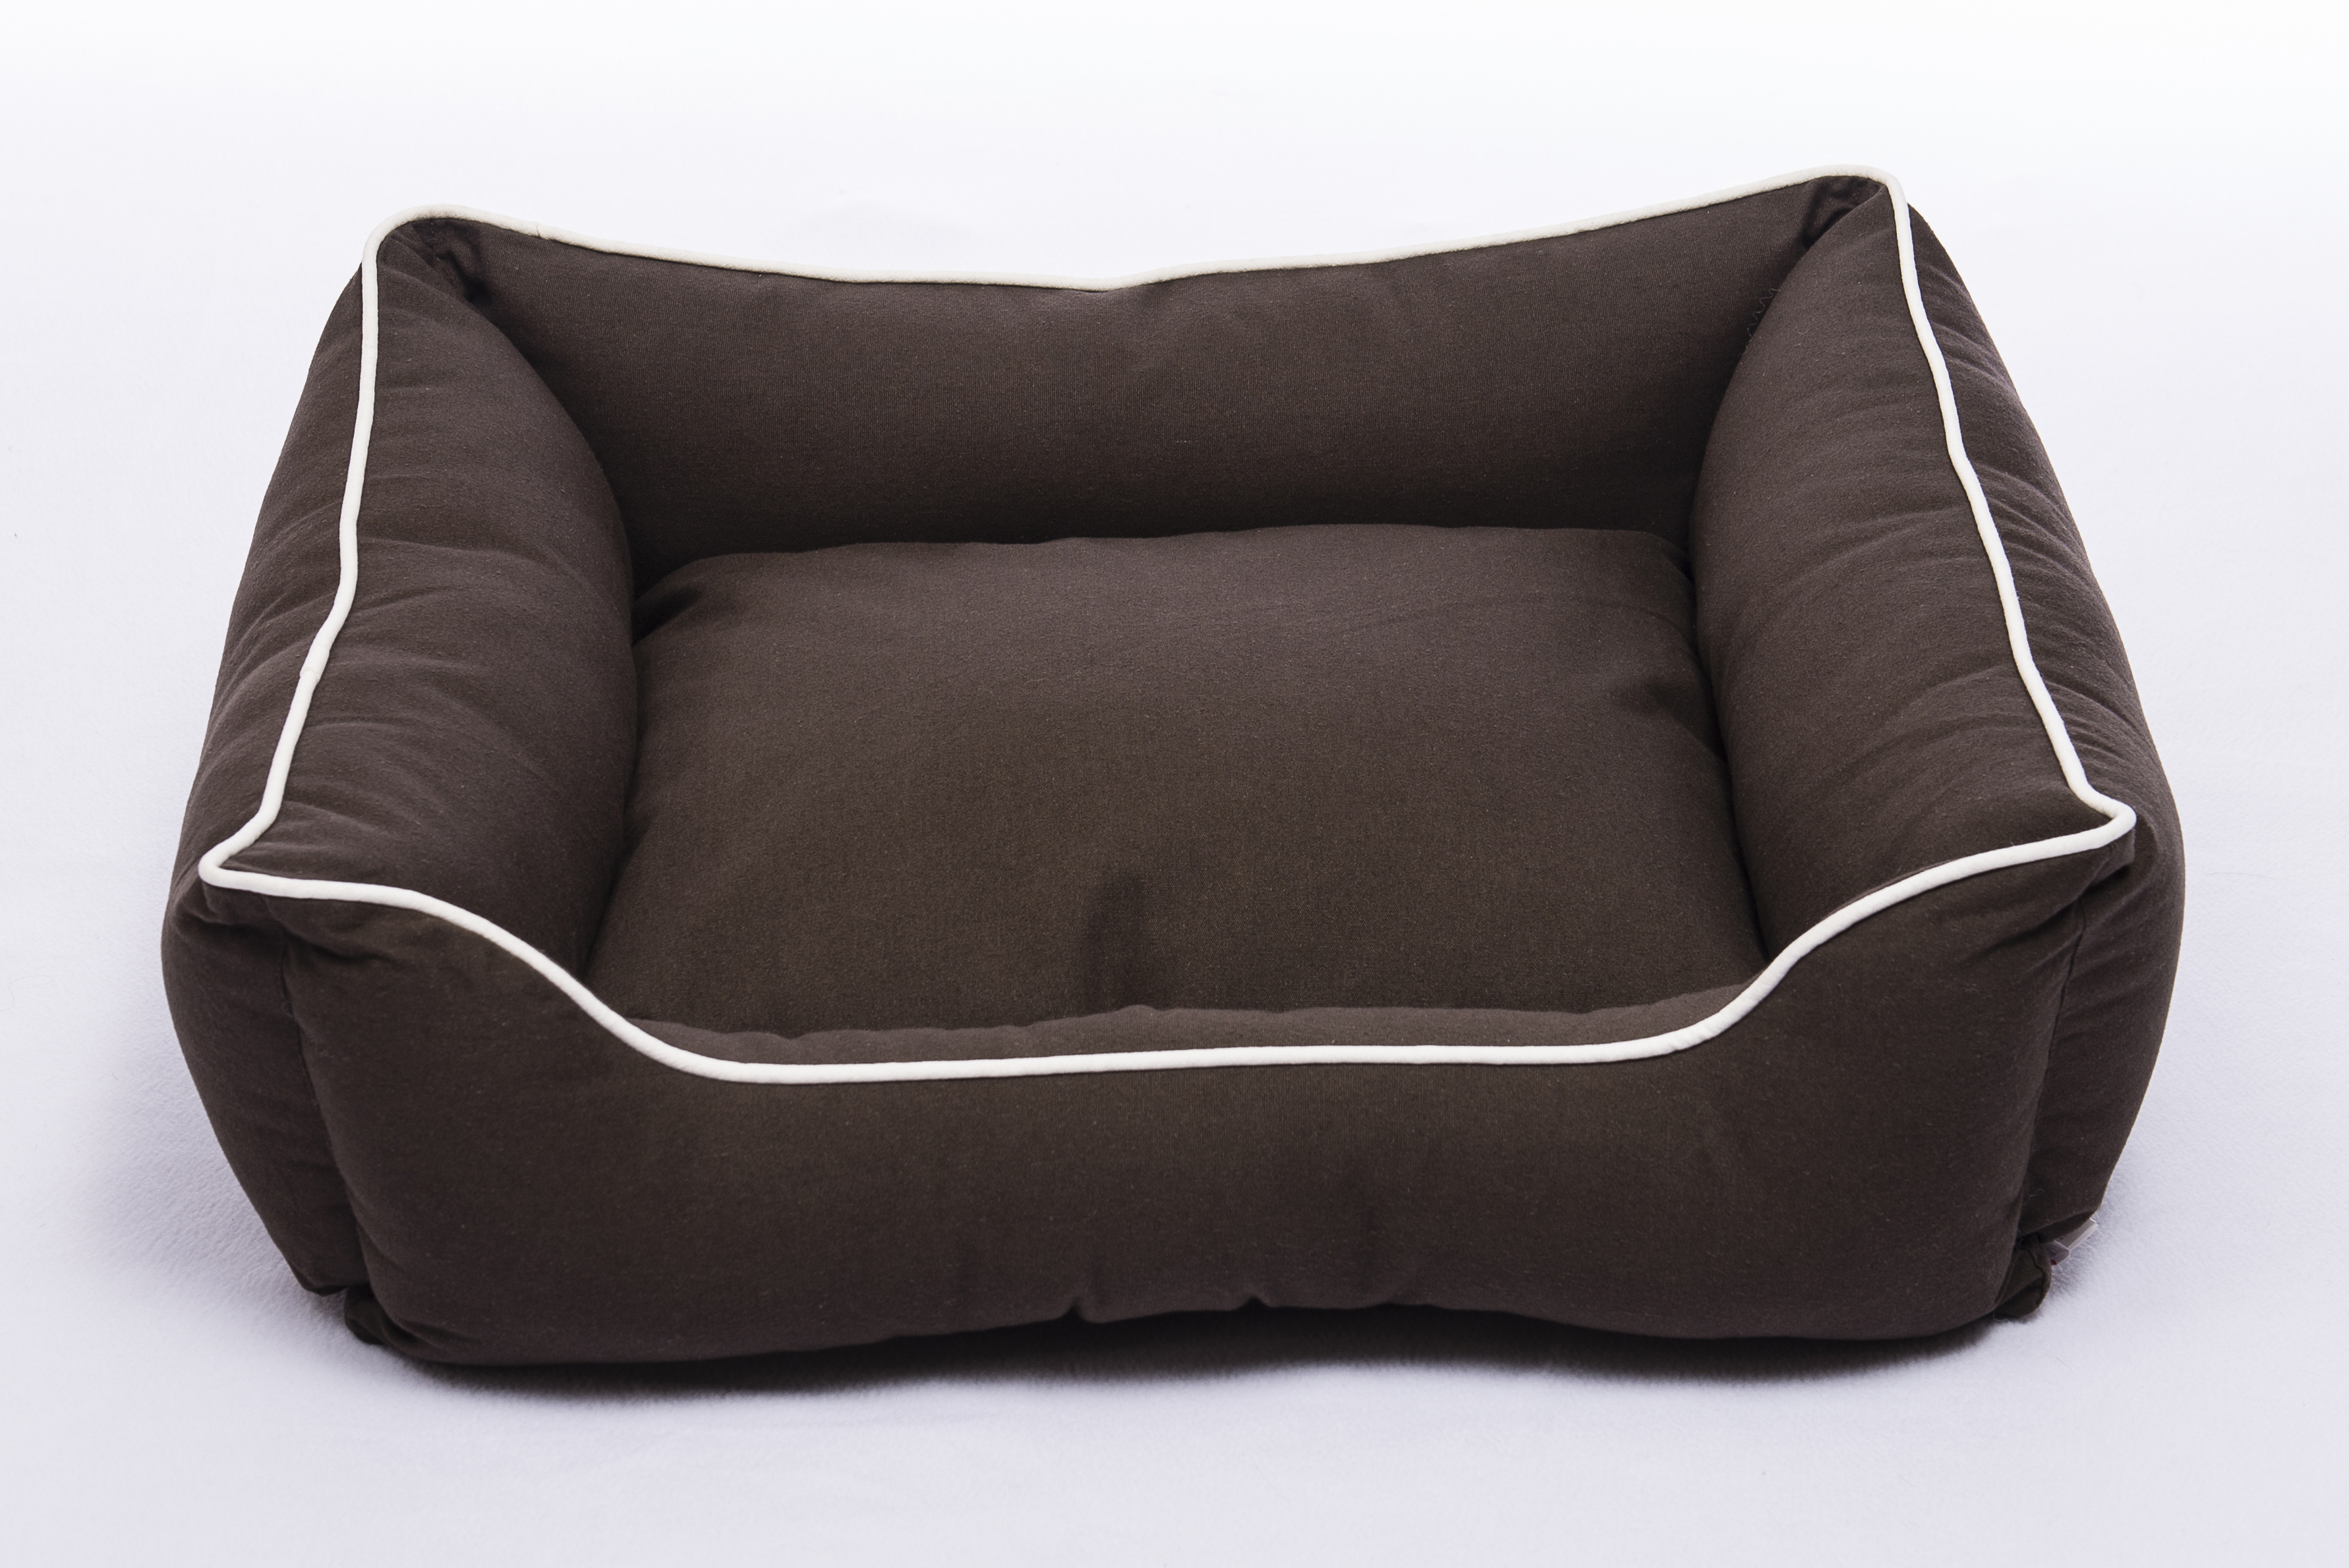 Dog Gone Smart Lounger Bed, large, 81x71 cm, Espresso